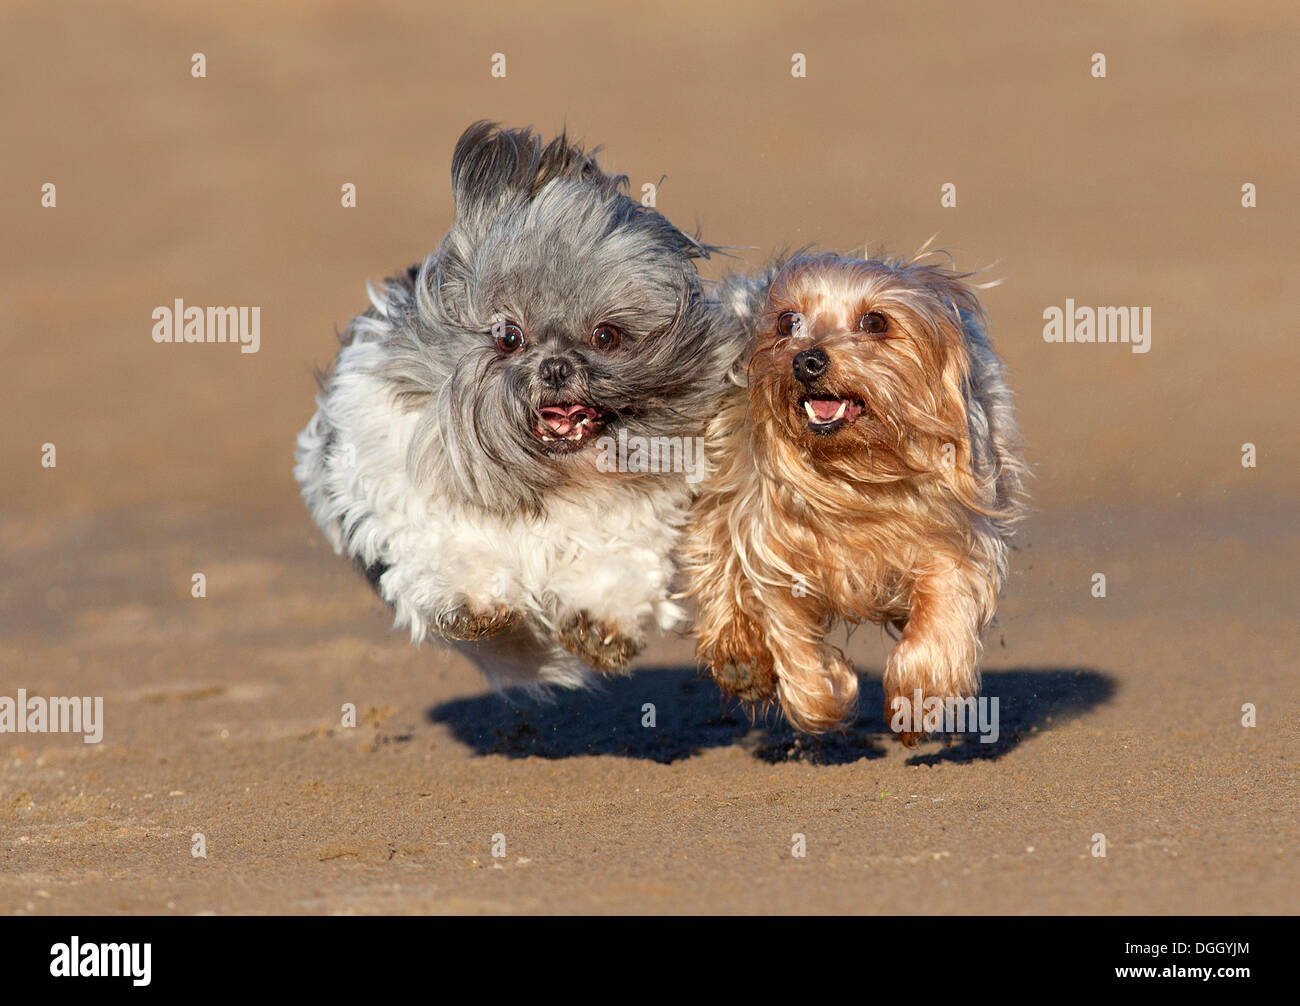 Yorkshire-Terrier und Shih Tzu Hunde zusammen laufen am Sandstrand. Stockfoto